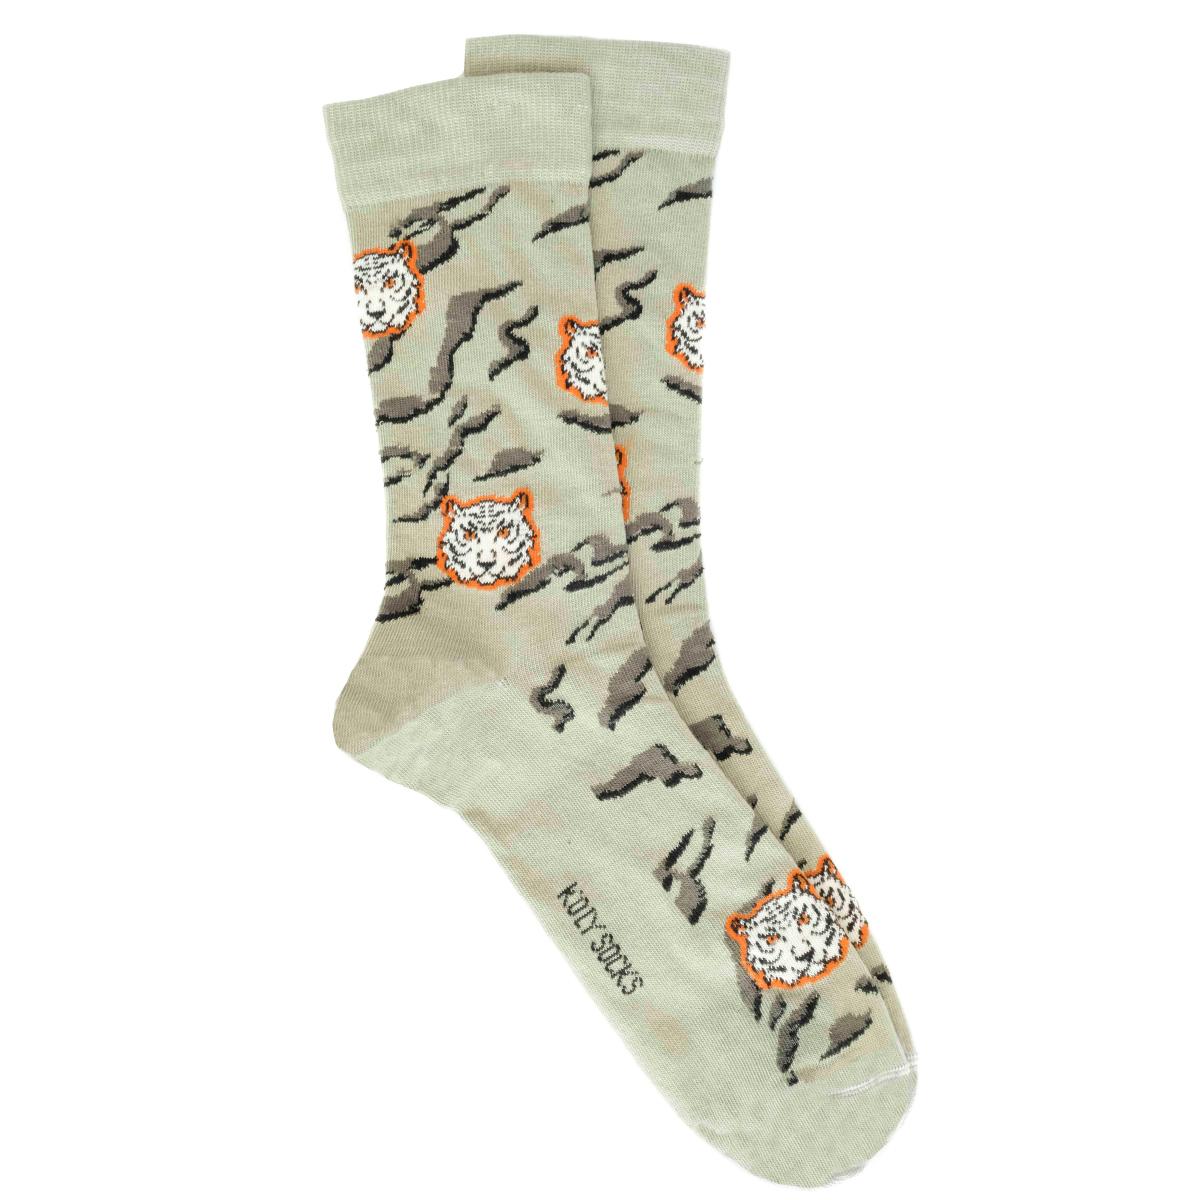 Selected image for KOLY SOCKS Muške čarape Tigar svetlozelene